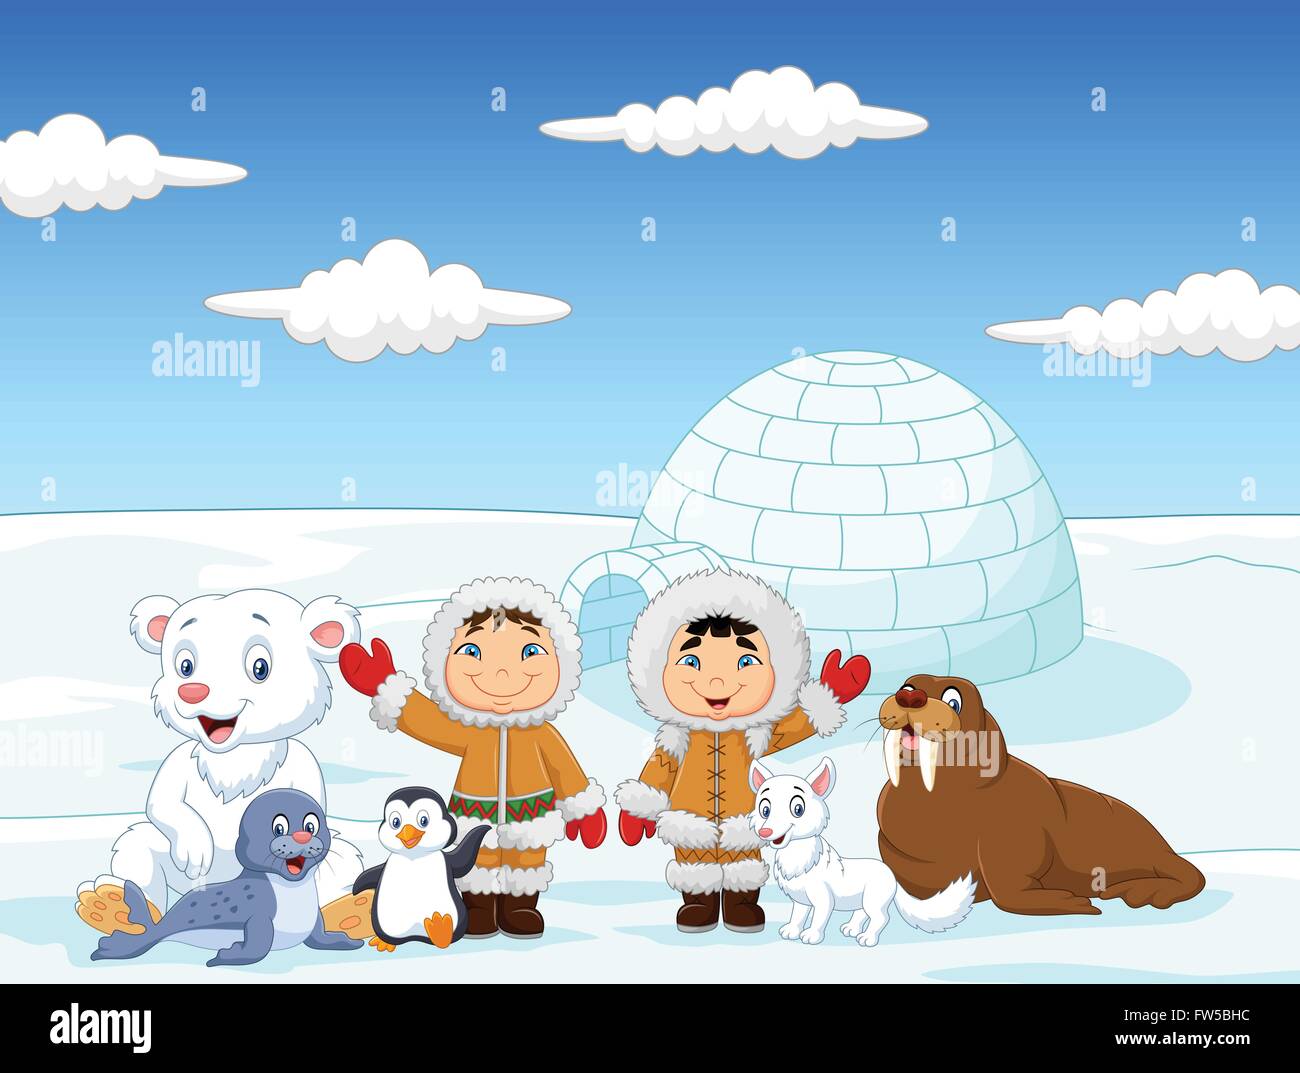 Les petits enfants portant des costumes traditionnels Eskimo avec les animaux de l'Arctique et l'arrière-plan maison igloo Illustration de Vecteur